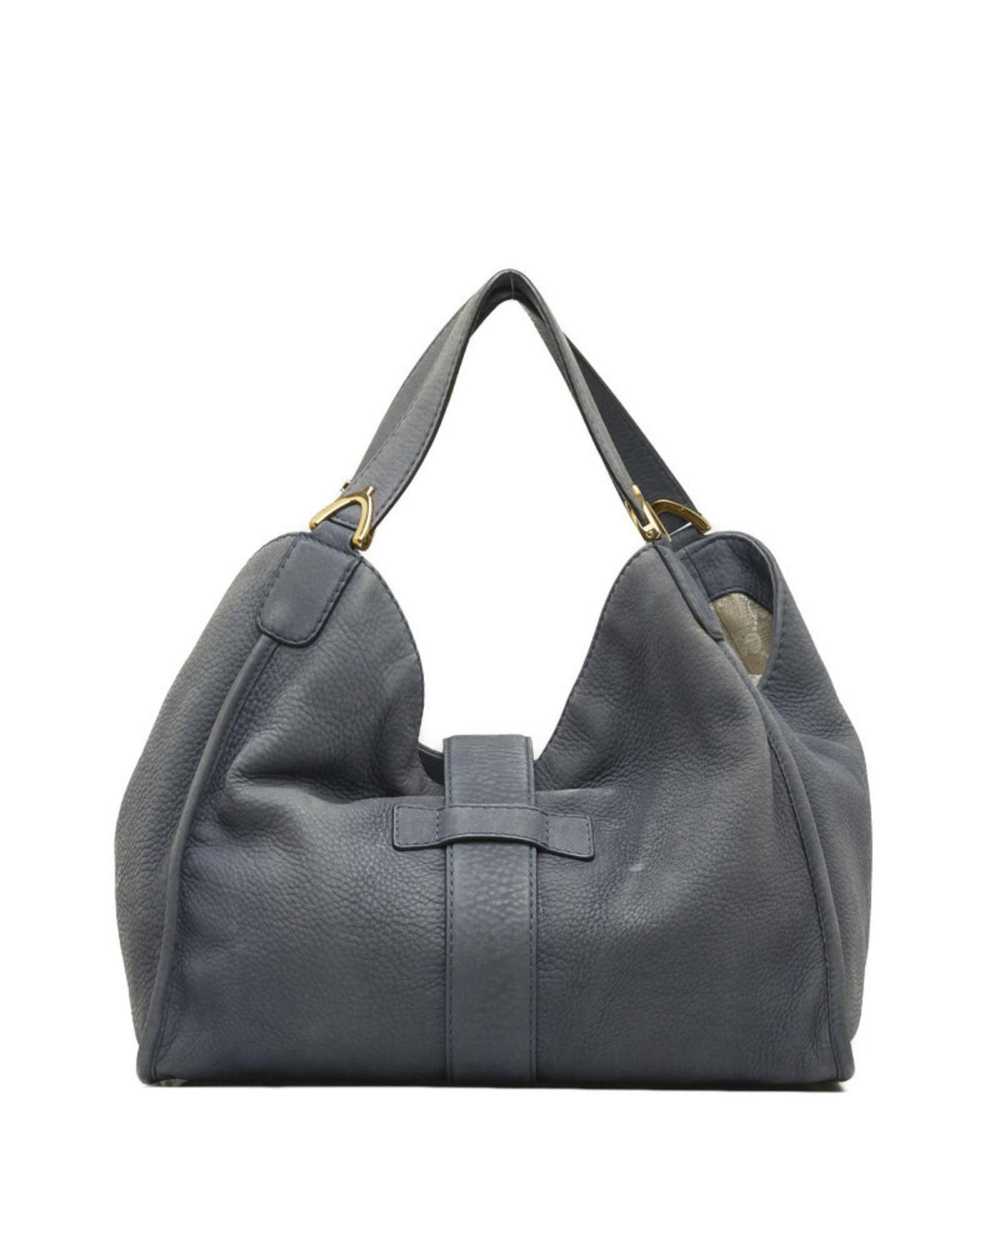 Gucci Luxury Soft Leather Shoulder Bag - image 3